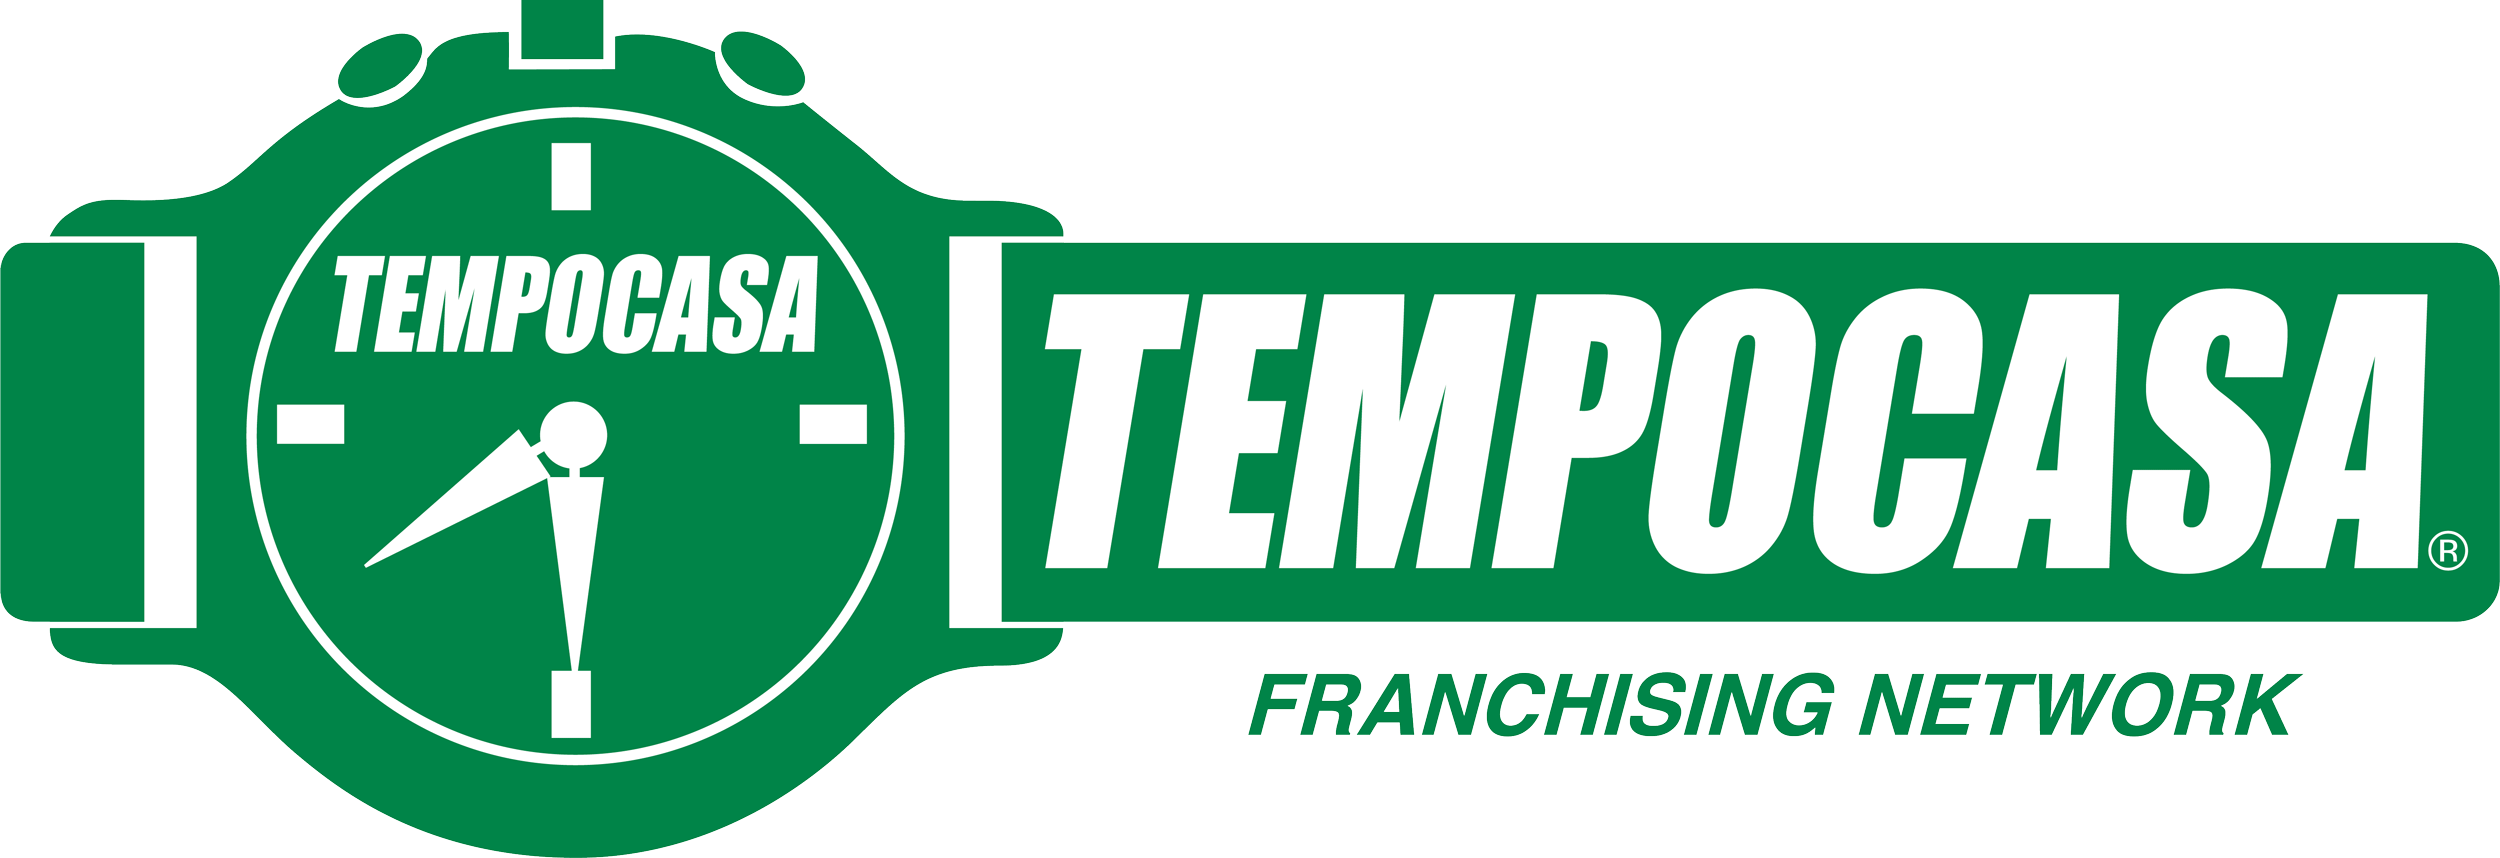 Crema - Tempocasa